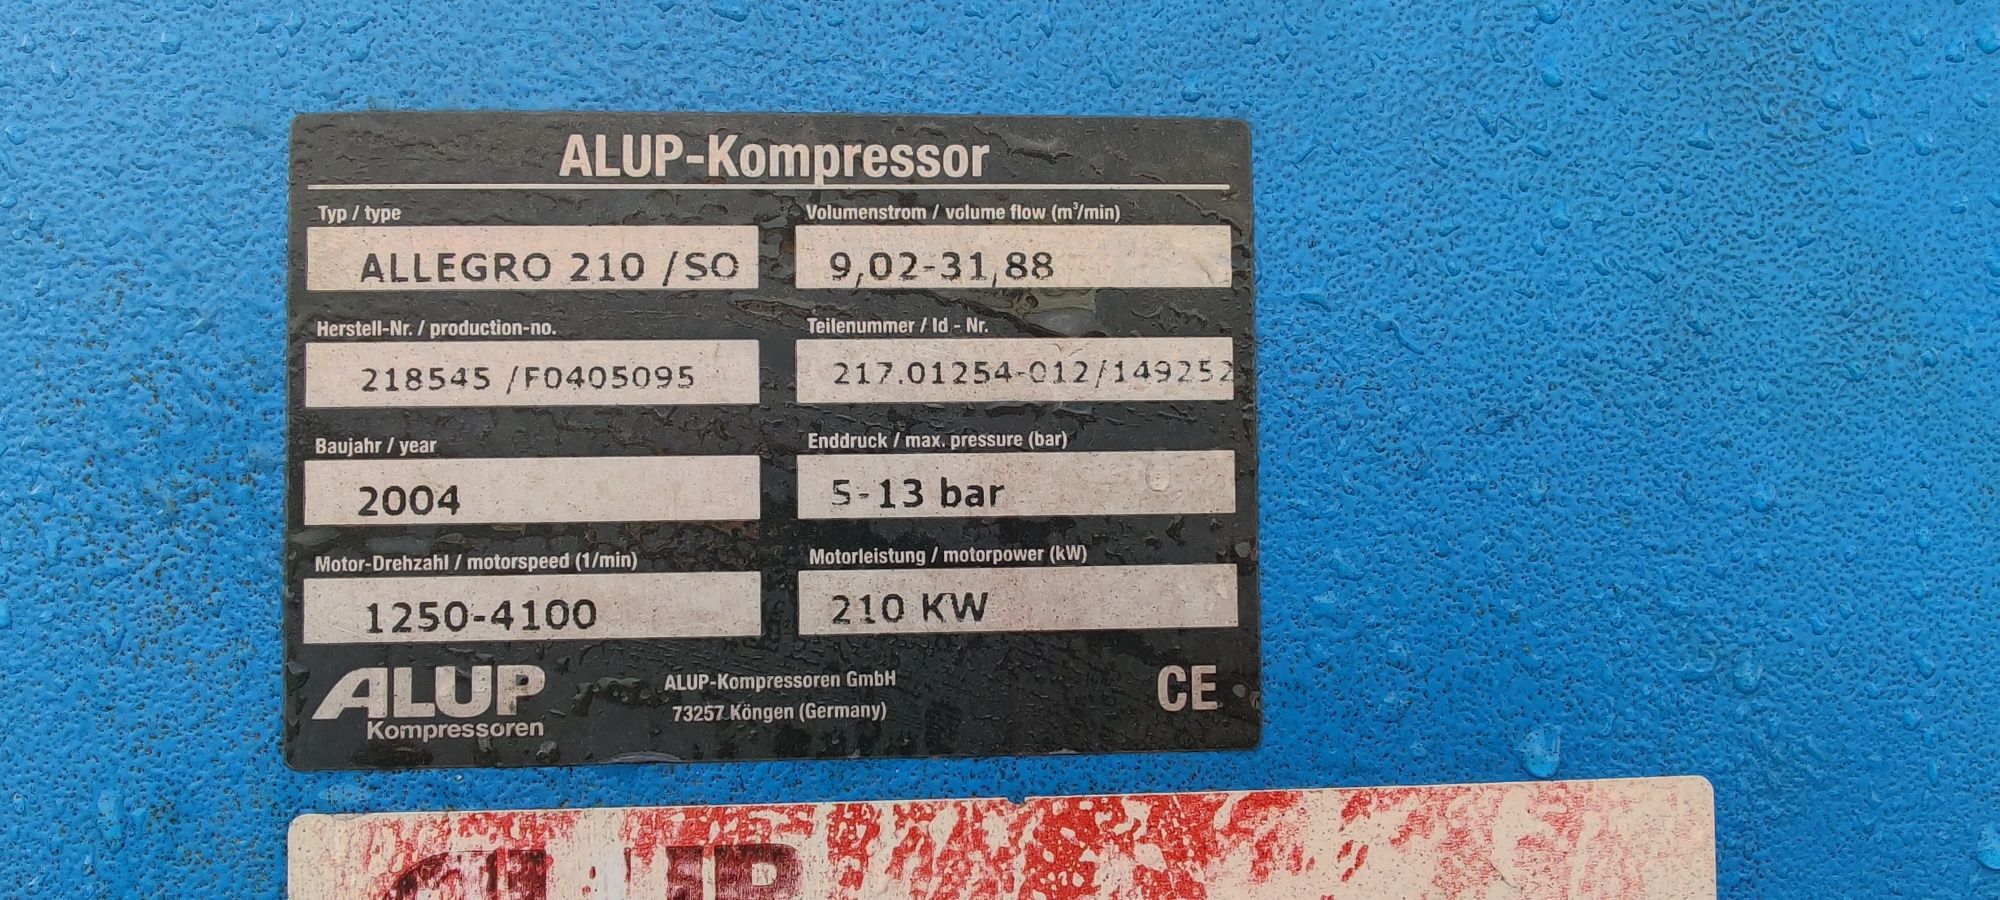 Compresor ALUP ALLEGRO 210Kw